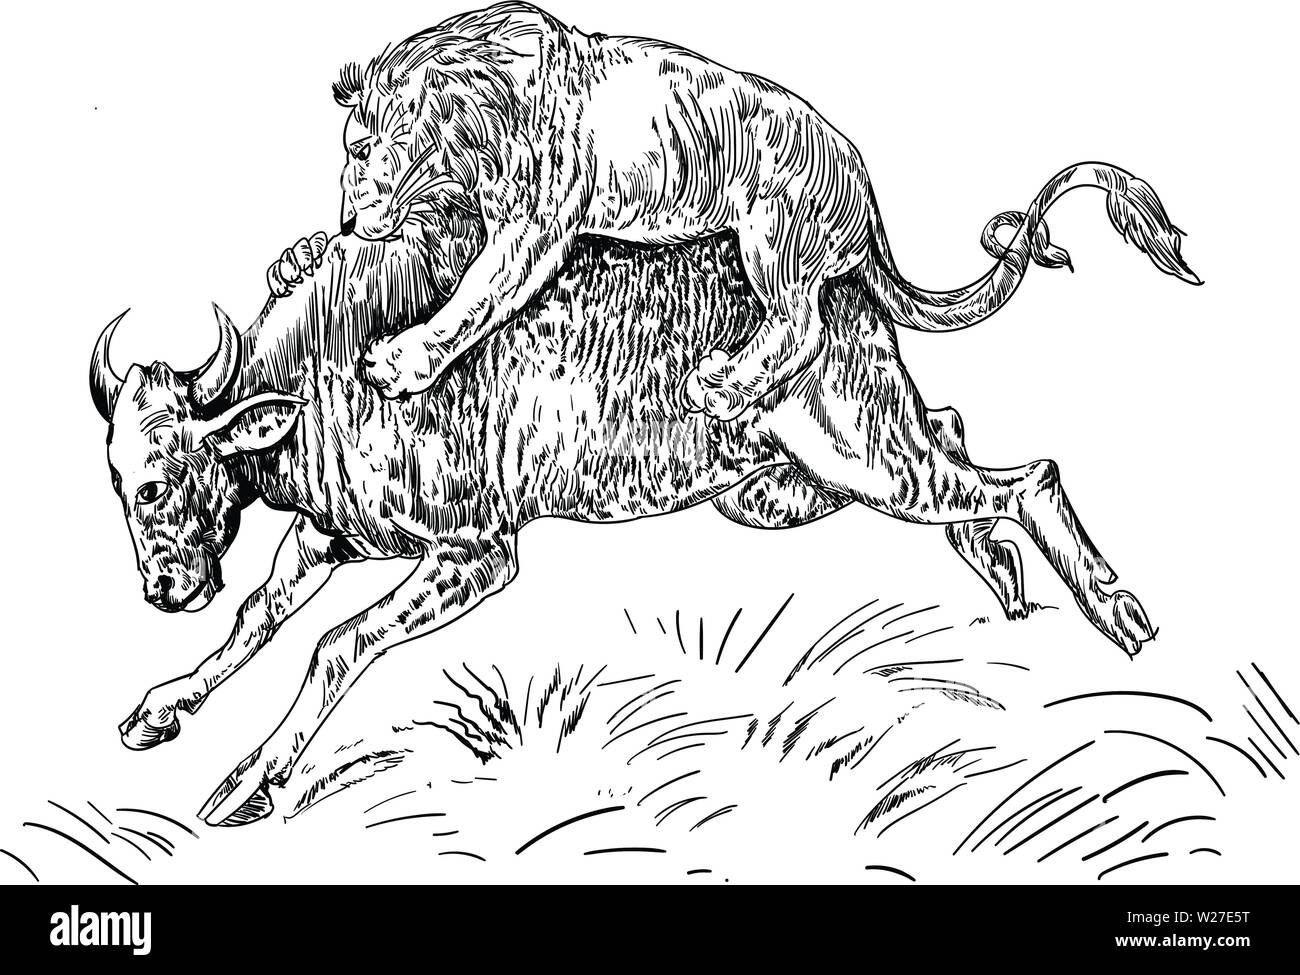 Loin attacking buffalo vector Stock Vector